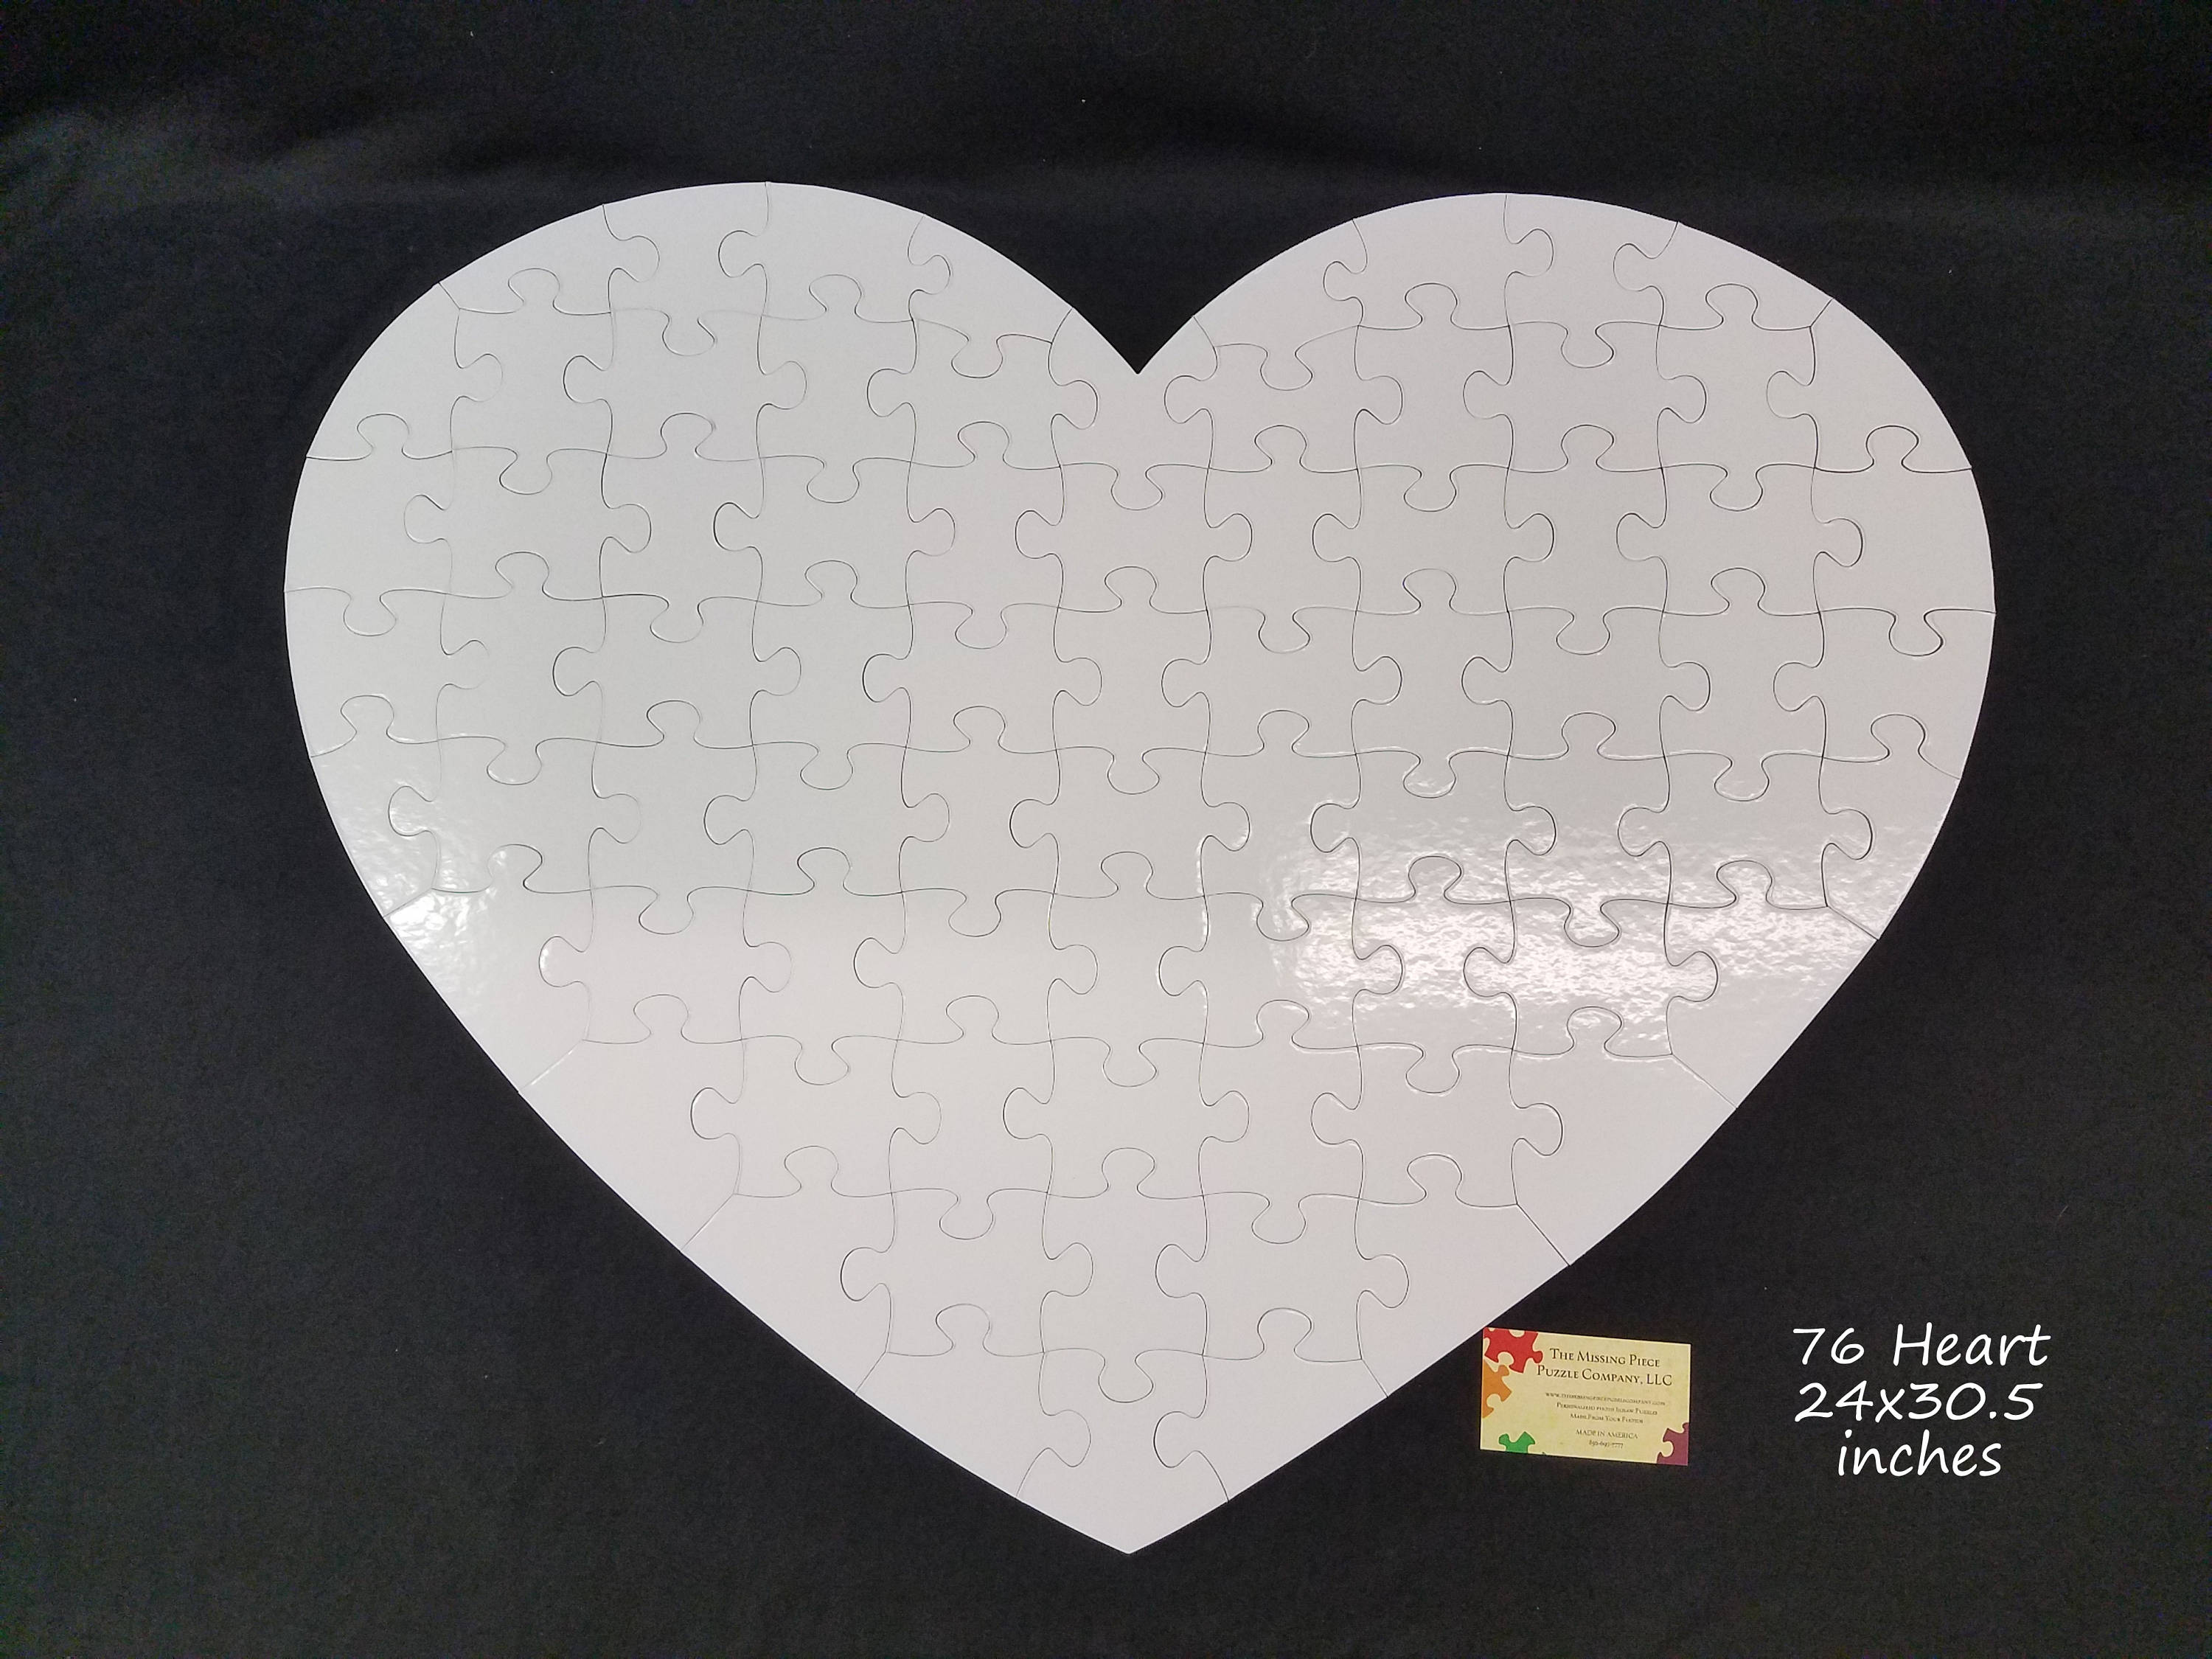 Heart Shaped Sublimation Jigsaw Puzzle – Blank Sublimation Mugs